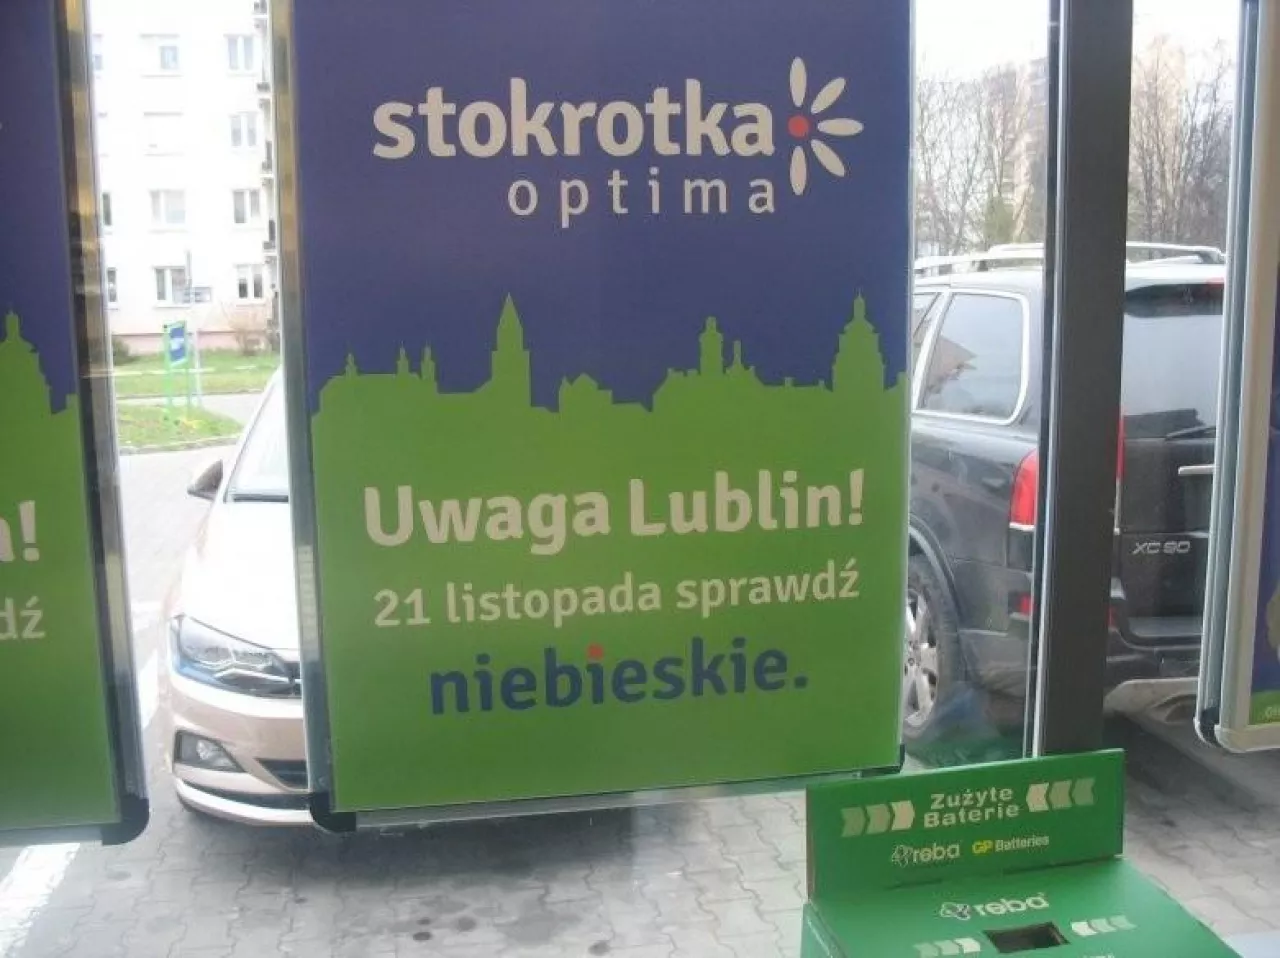 Na zdj. sklep Stokrotka Optima (fot. wiadomoscihandlowe.pl)